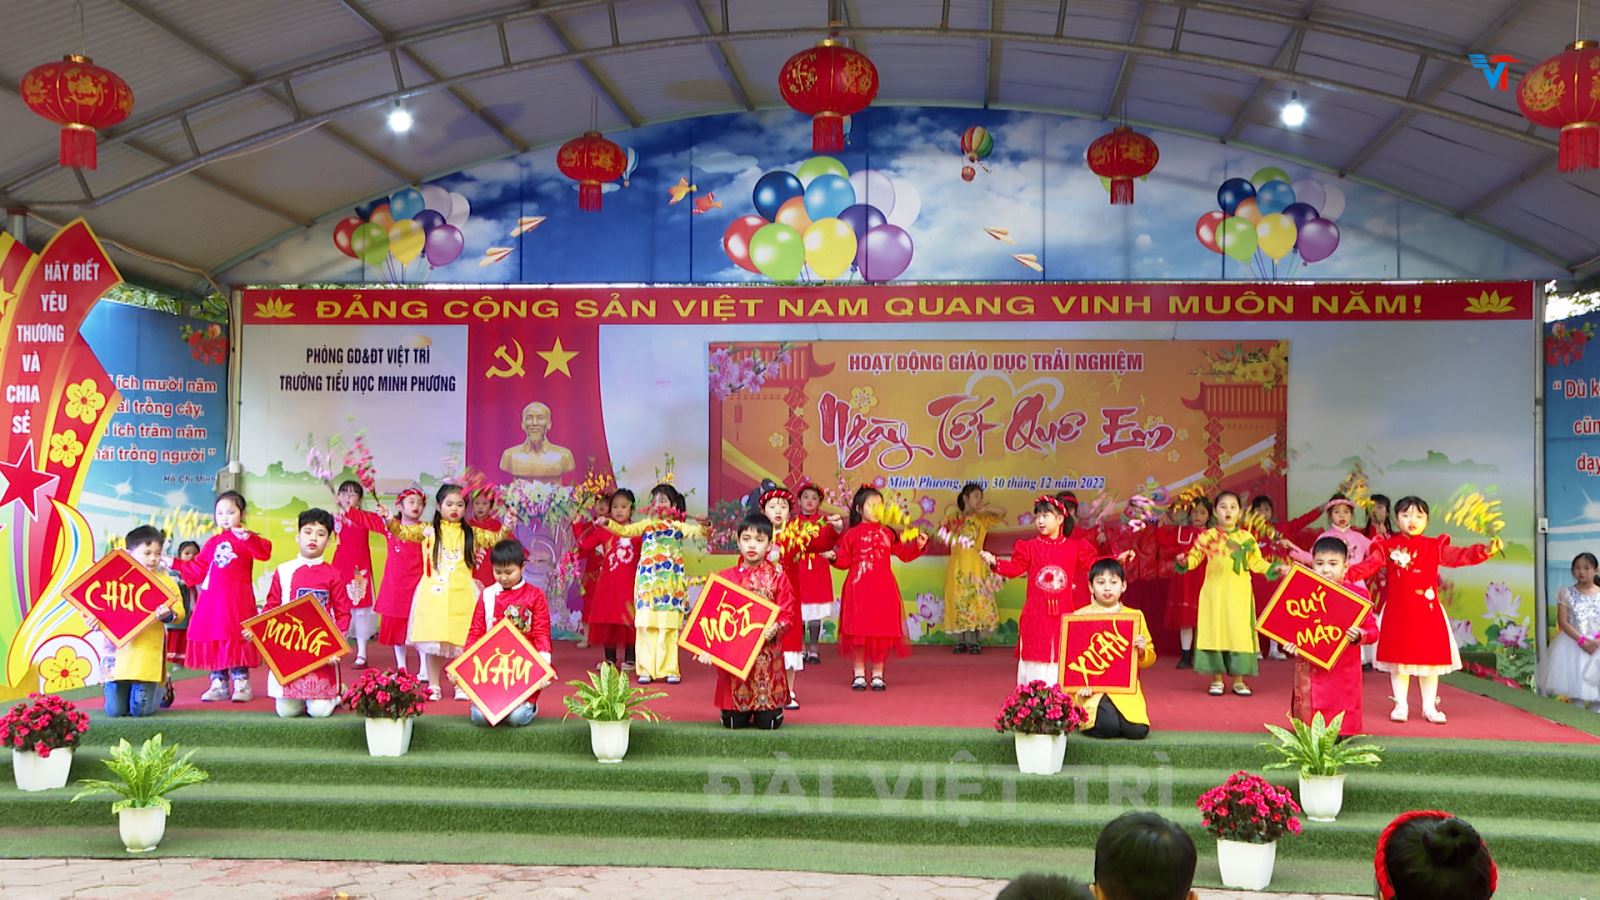 Trường Tiểu học Minh Phương tổ chức Hội chợ ngày tết quê em.